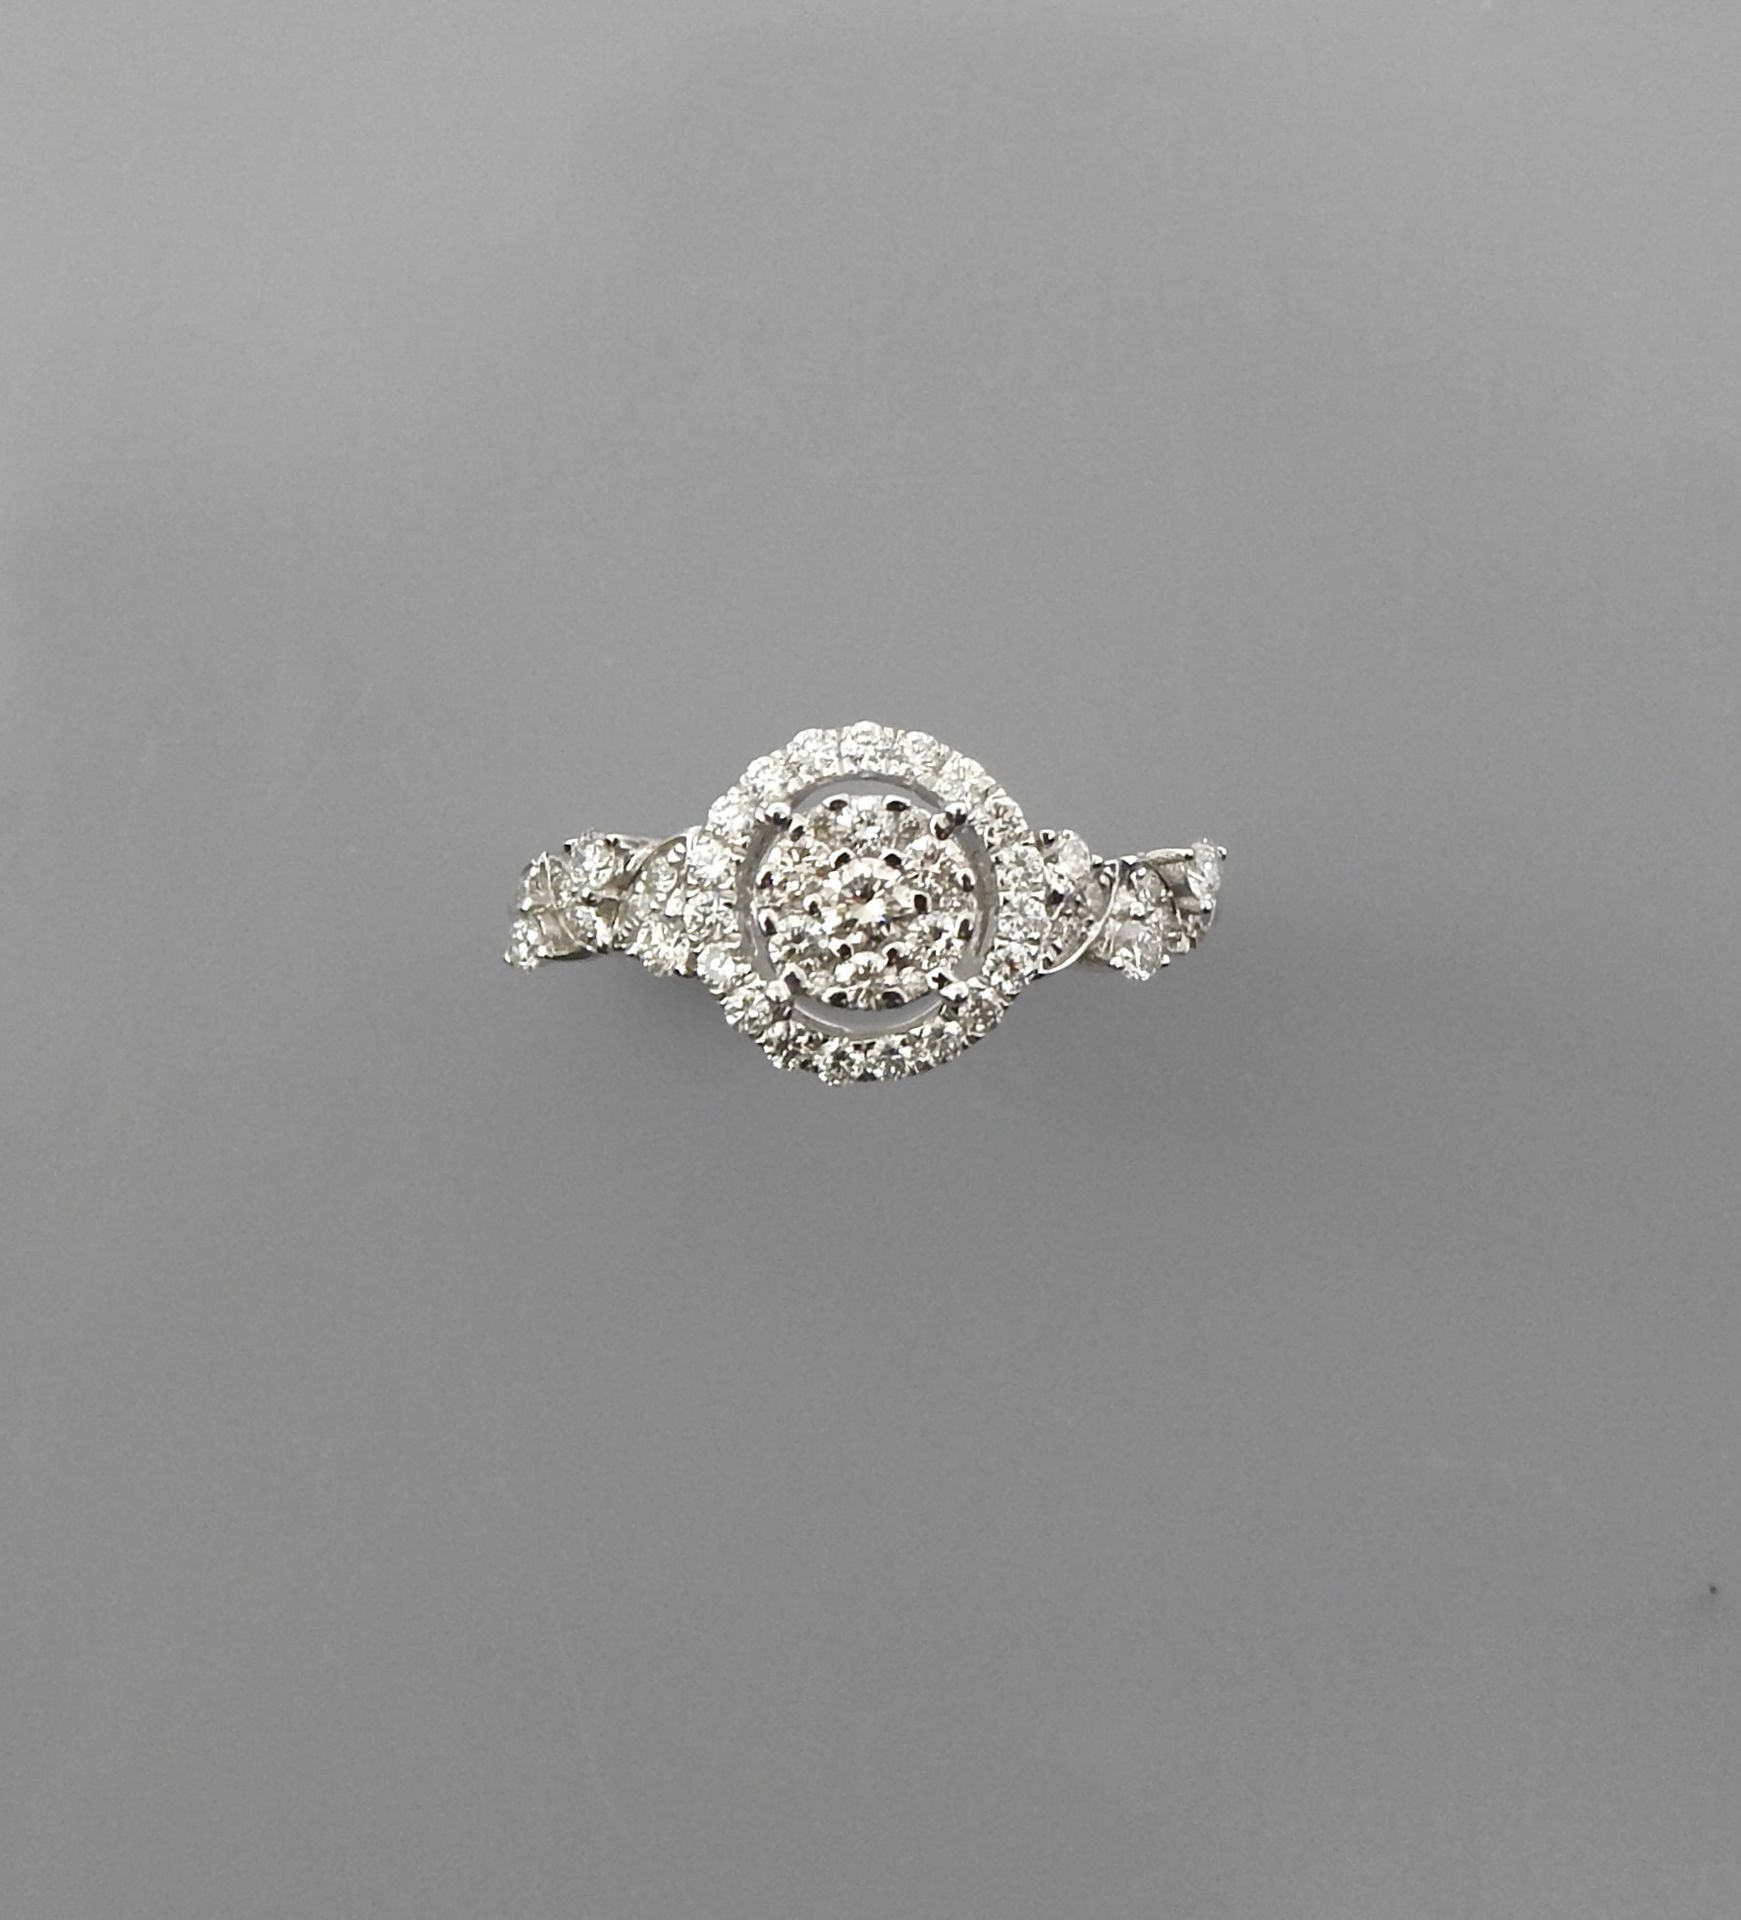 Null Ring aus Weißgold, 750 MM, mit Diamanten, Größe: 52, Gewicht: 2,3gr. Brutto&hellip;